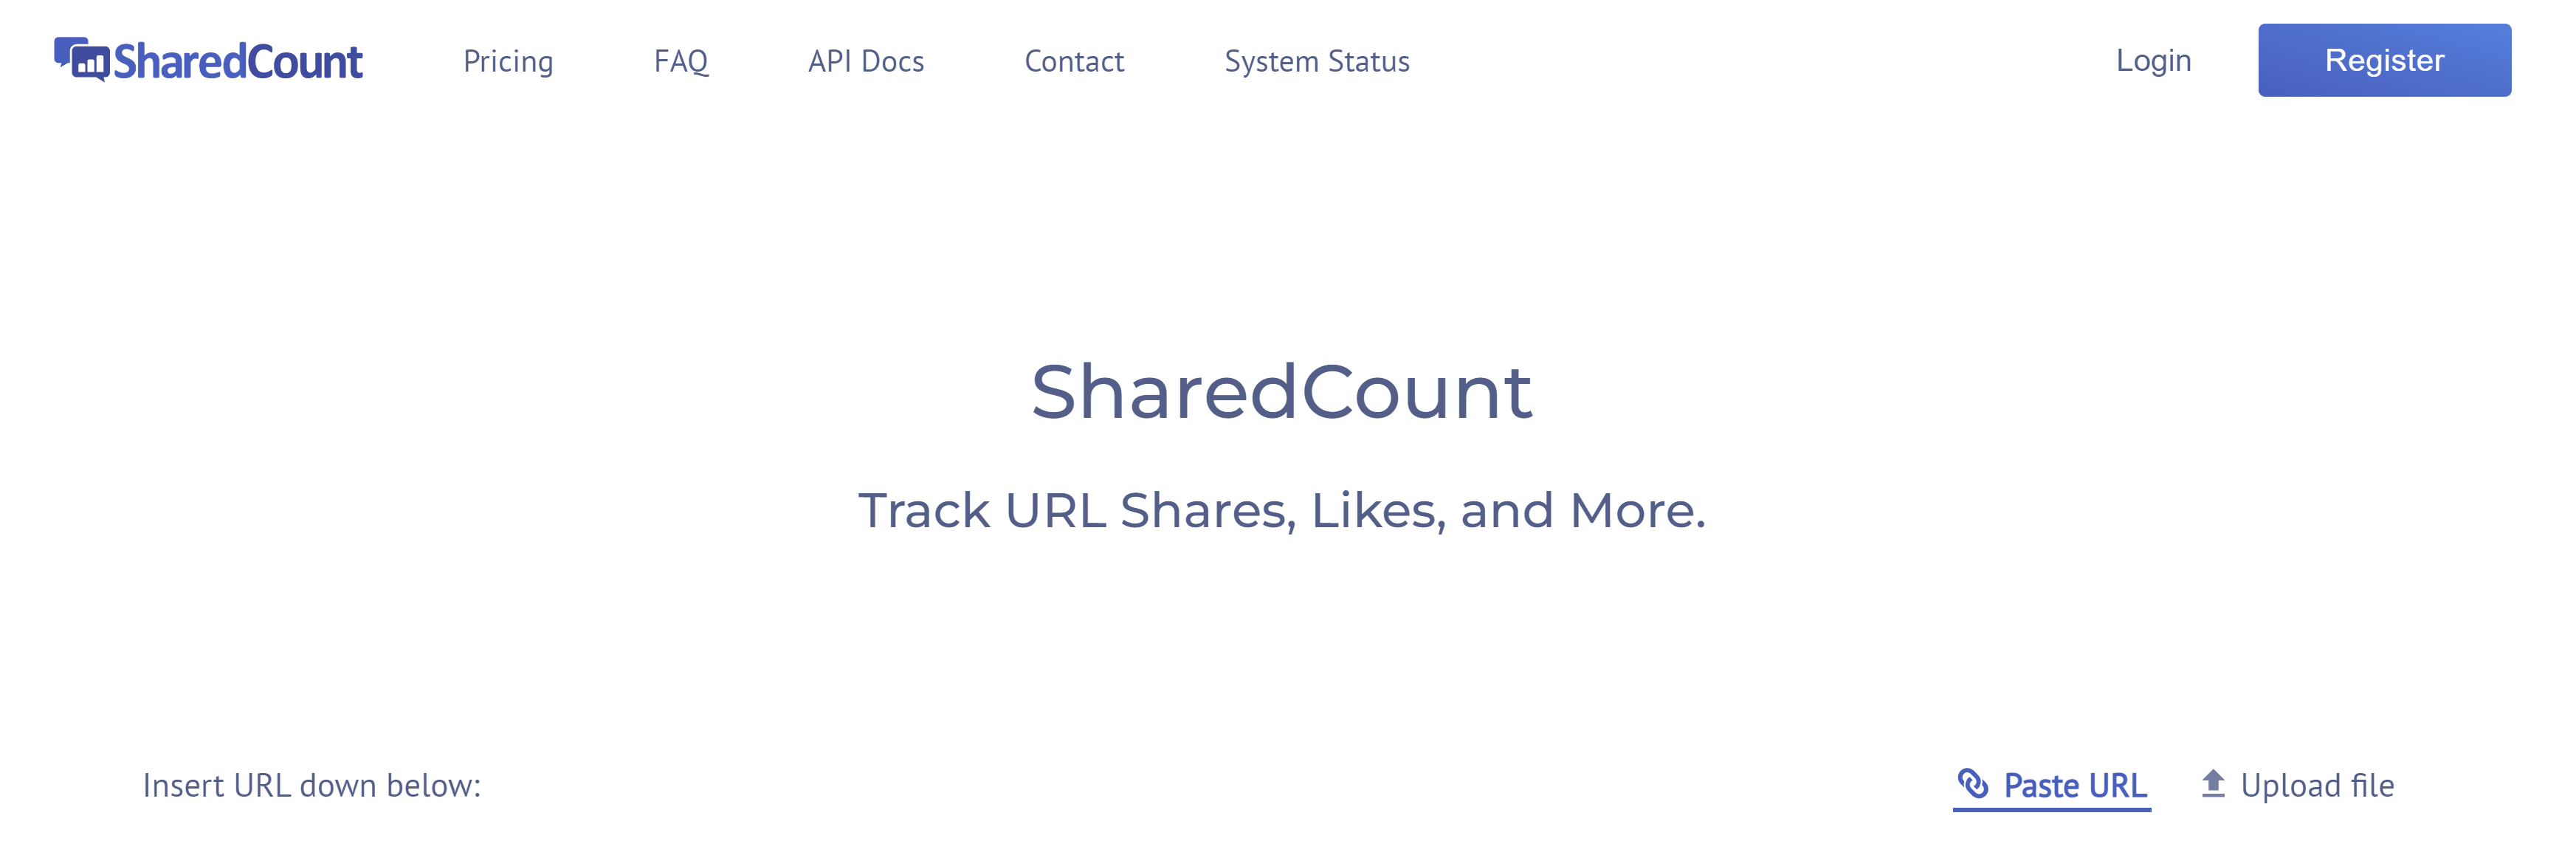 Sosyal medya gönderilerinizin etkileşimini ölçmenize yardımcı olan bir araç olan SharedCount'un ekran görüntüsü